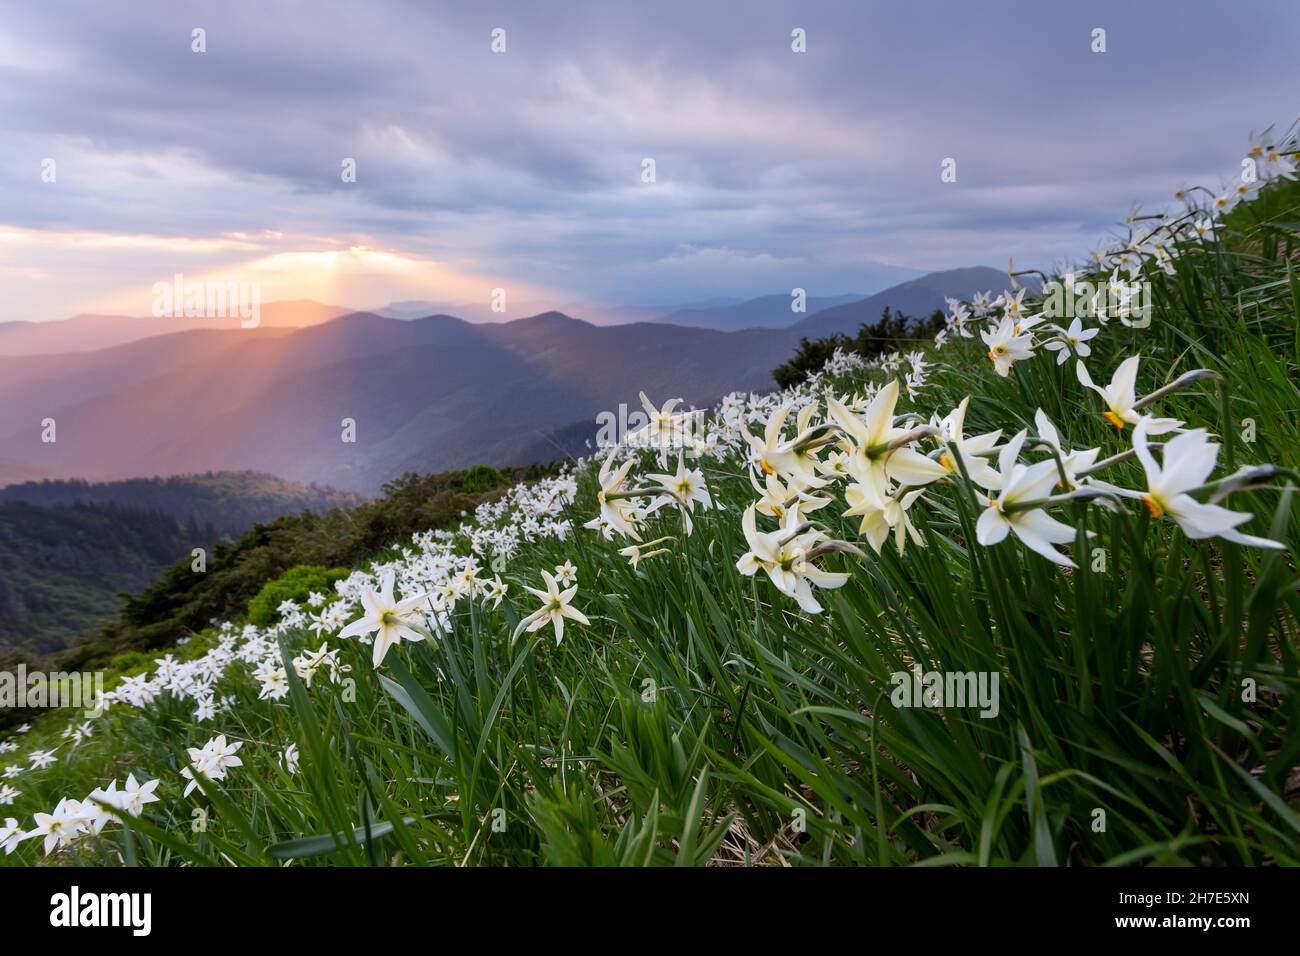 Fiori bianchi di naffodil che sbocciano sulle alte montagne selvatiche. Il tramonto con raggi illumina l'orizzonte. Cielo con le nuvole. Sfondo estivo. ND Foto Stock